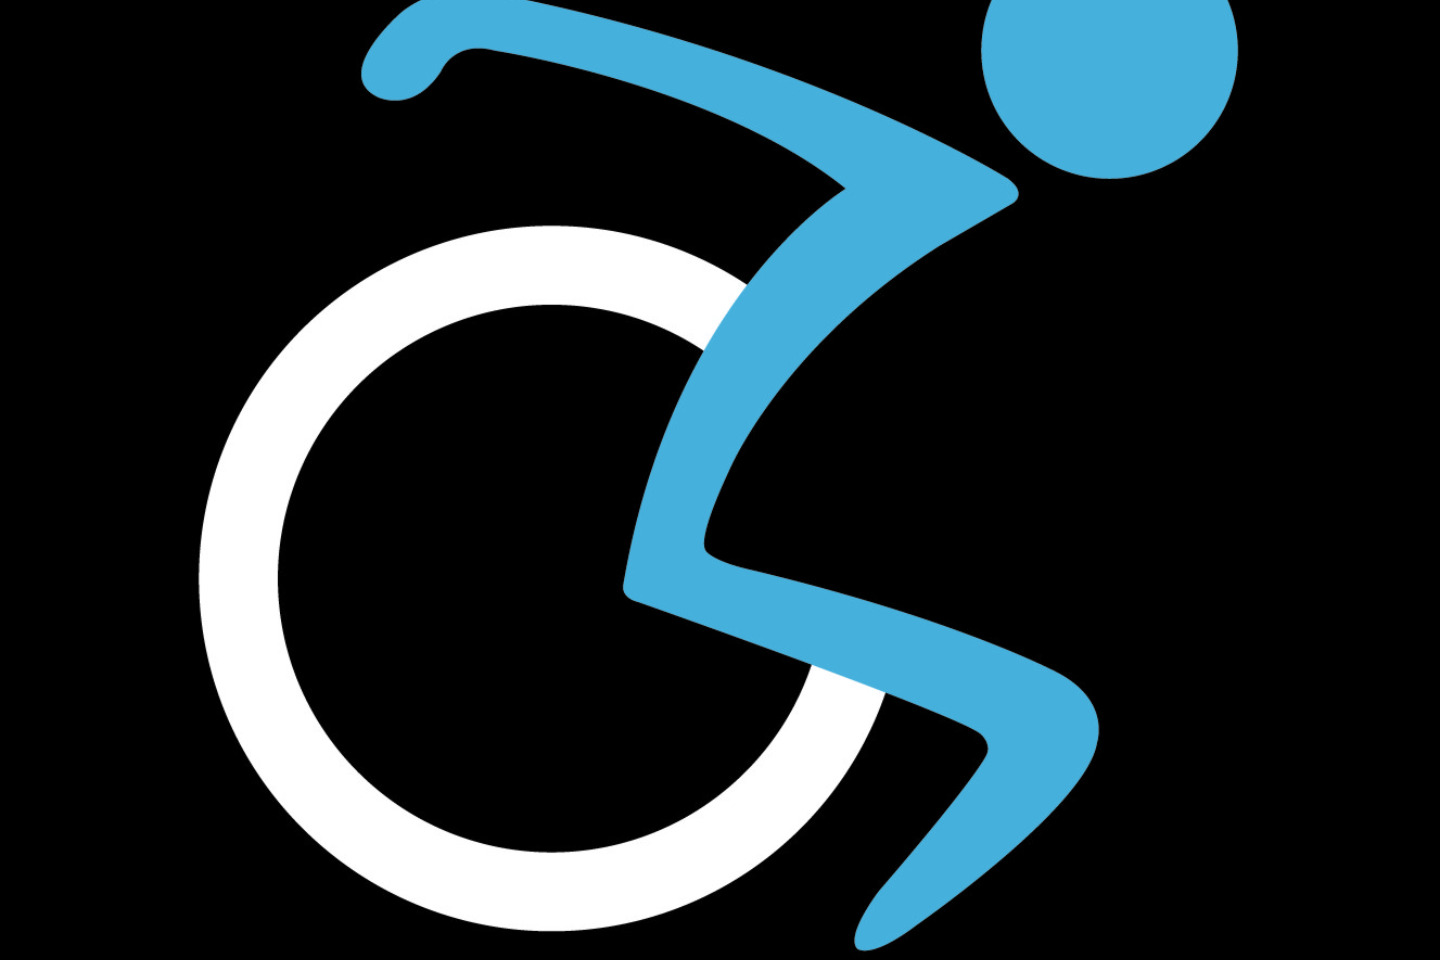 VCC205 - Treuil de chargement de fauteuil roulant